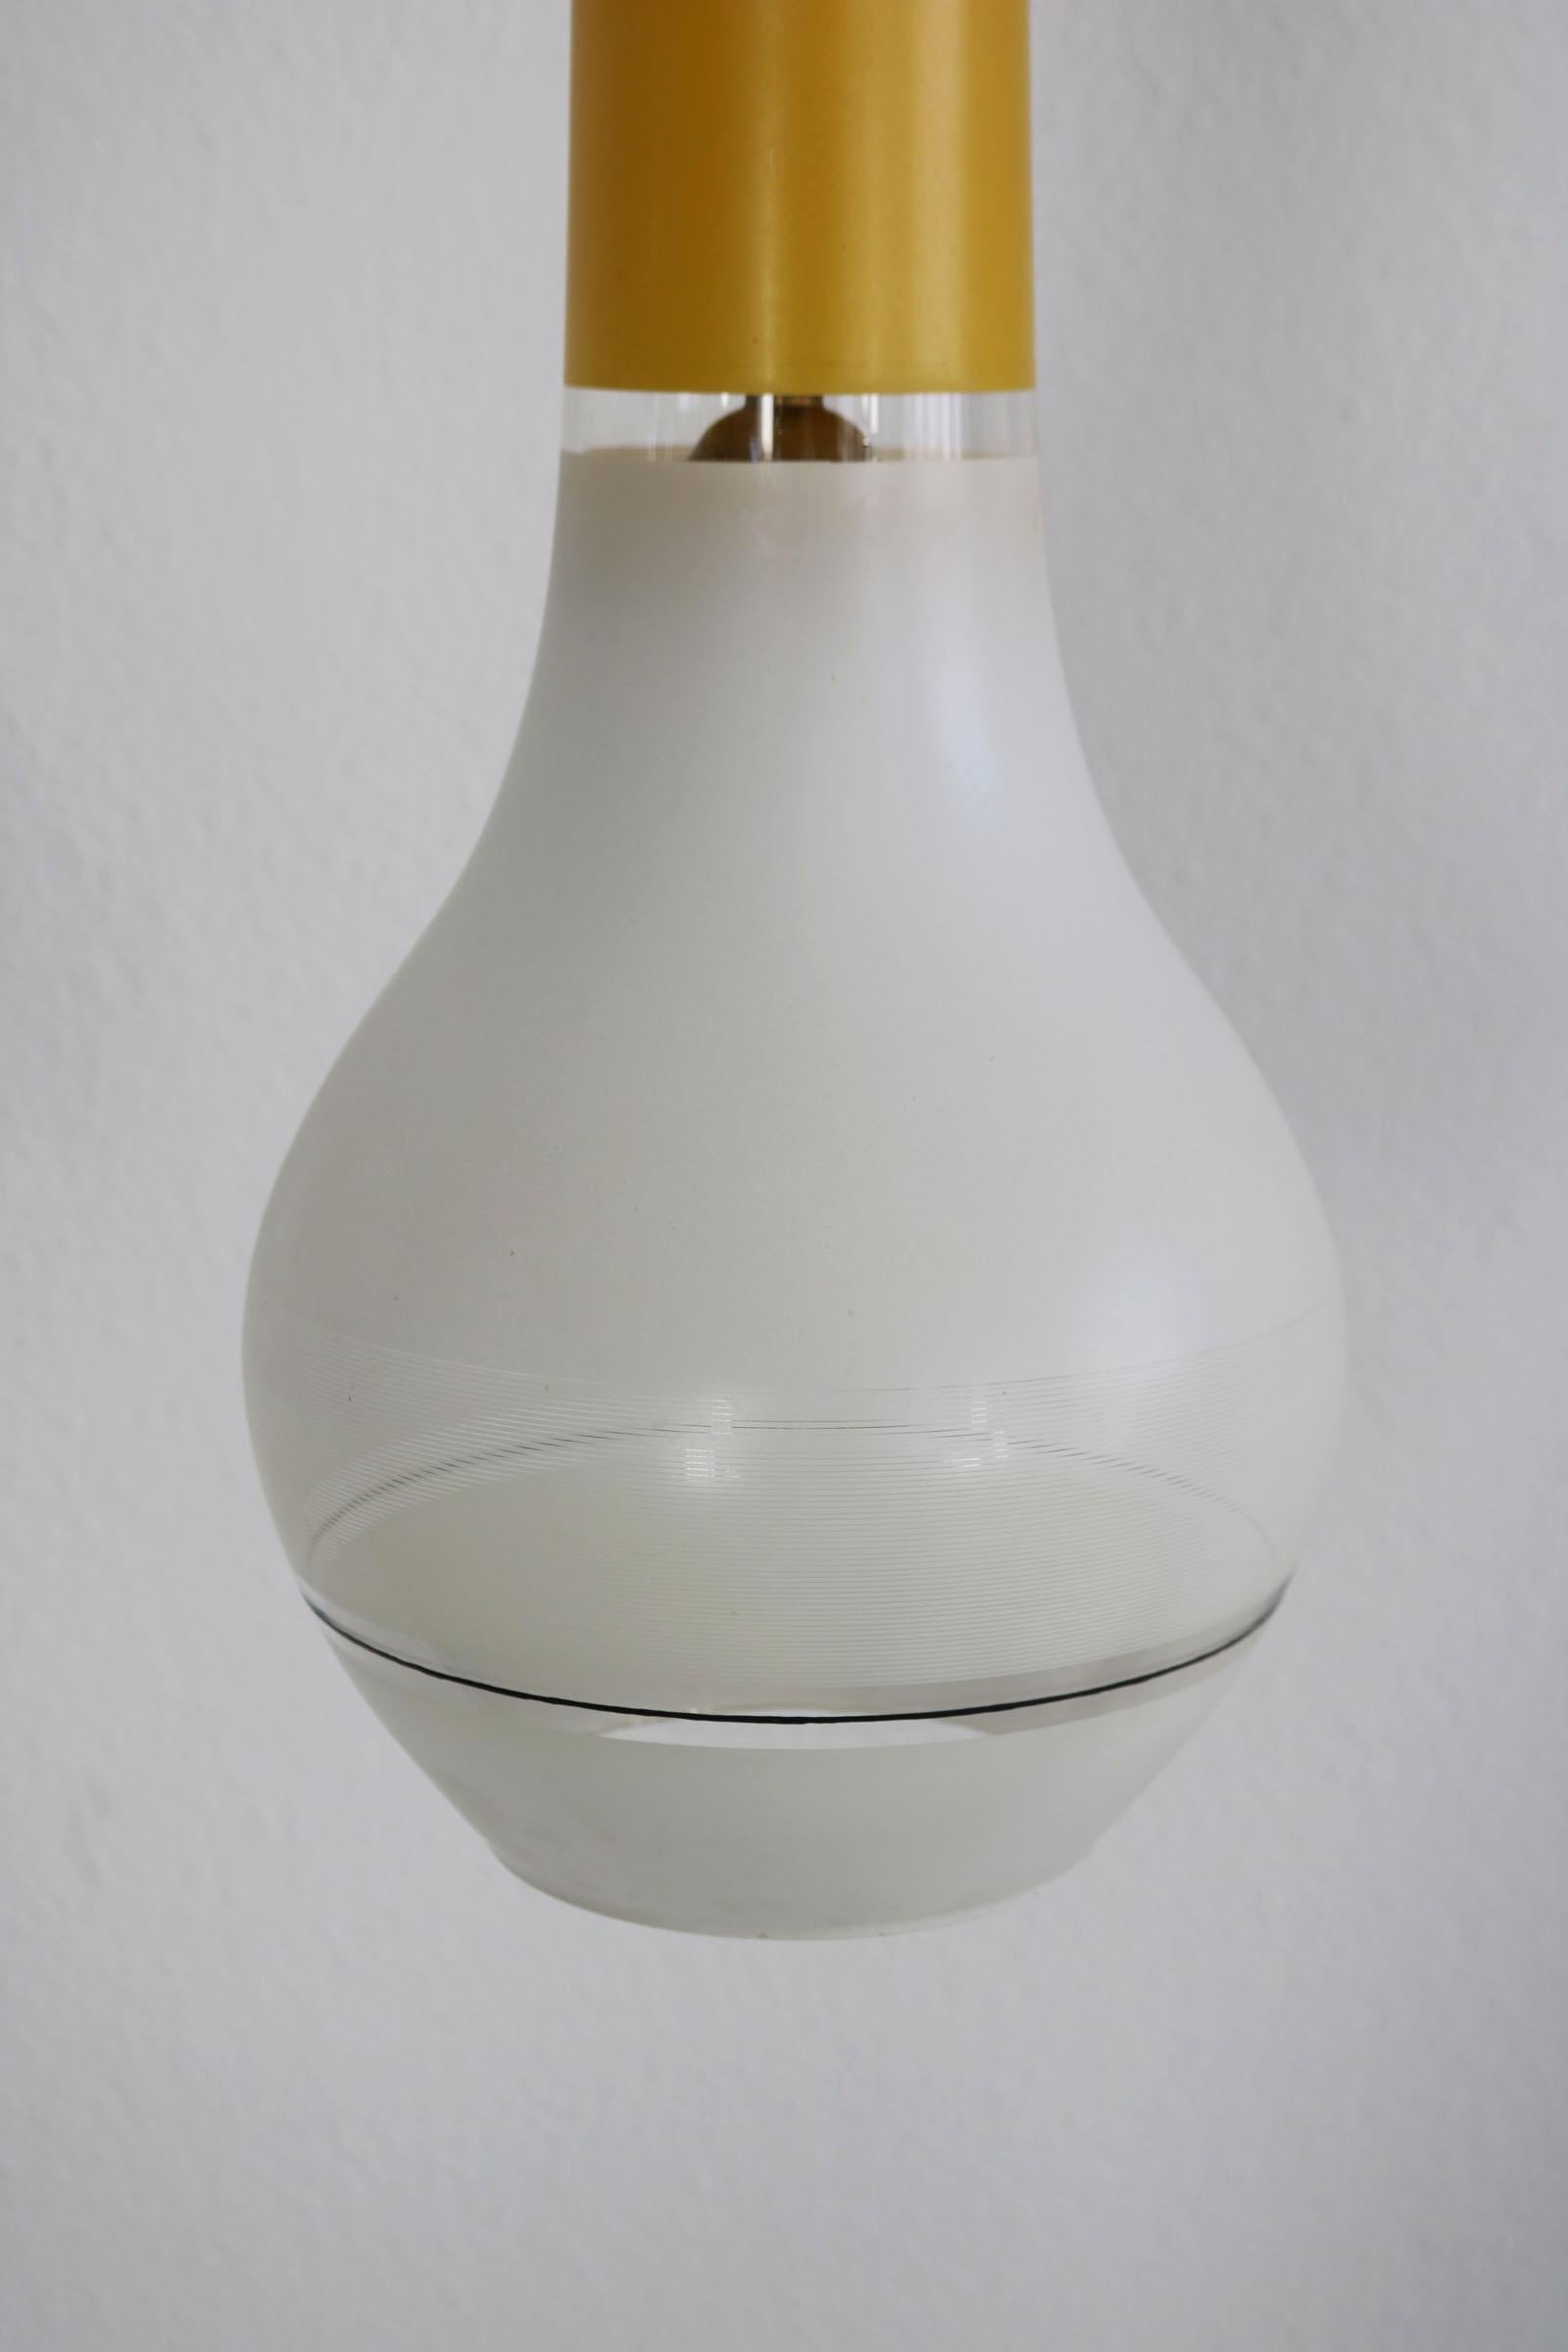 Brass Italian Vetreria Laguna Murano Pendant Light from the, 1960s For Sale